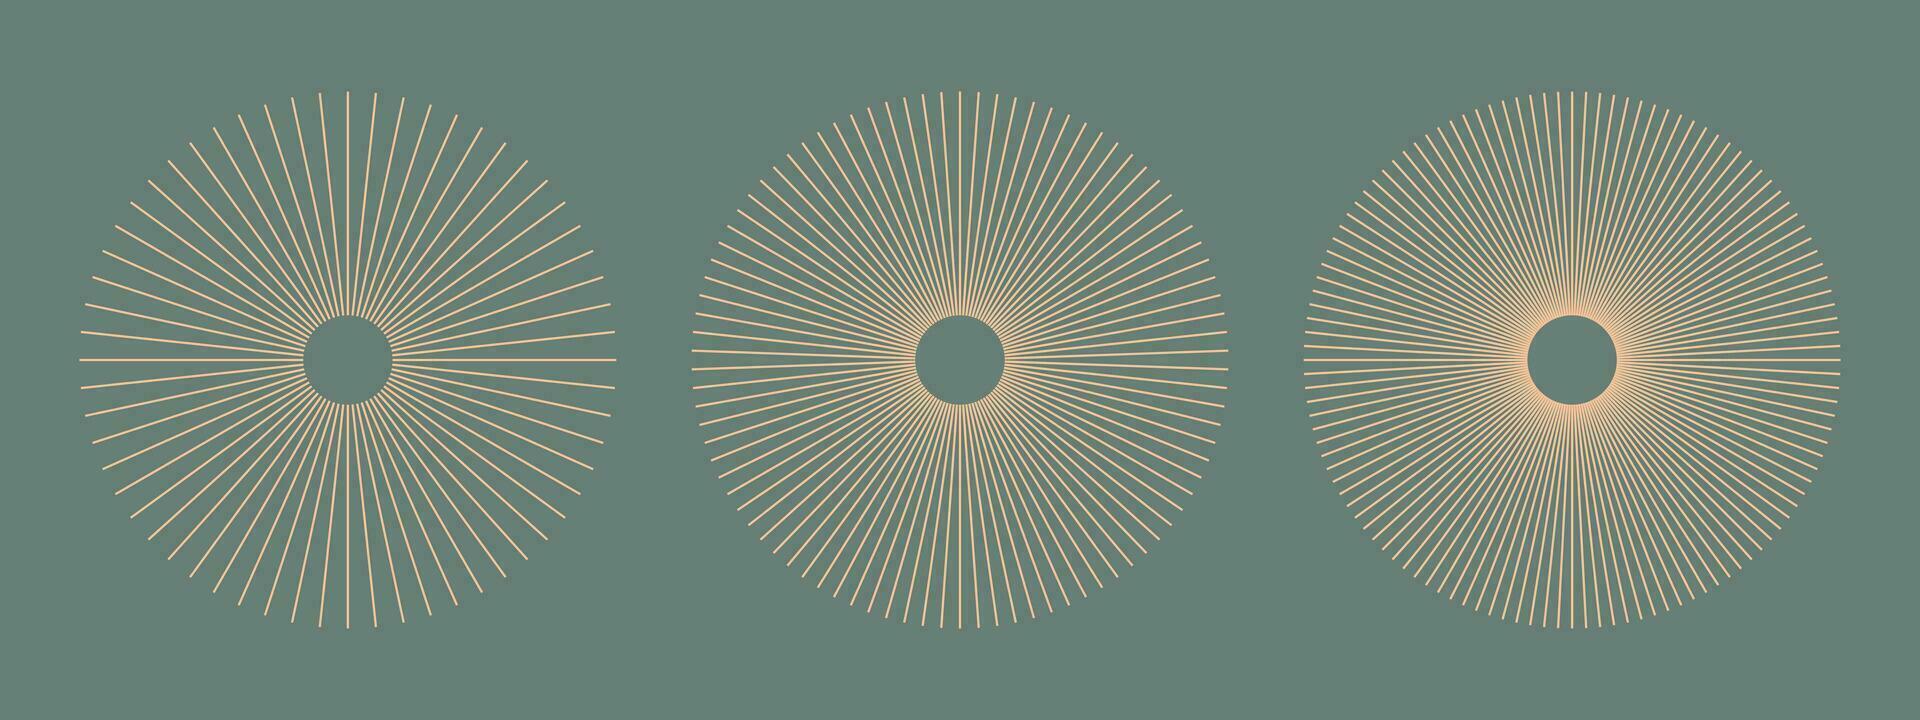 radiaal cirkel lijnen. circulaire lijnen elementen. symbool van zon ster stralen. perzik dons sneeuwvlok. vlak ontwerp element. abstract illusie meetkundig vorm geven aan. spaken met uitstralend strepen. vector grafisch. eps.